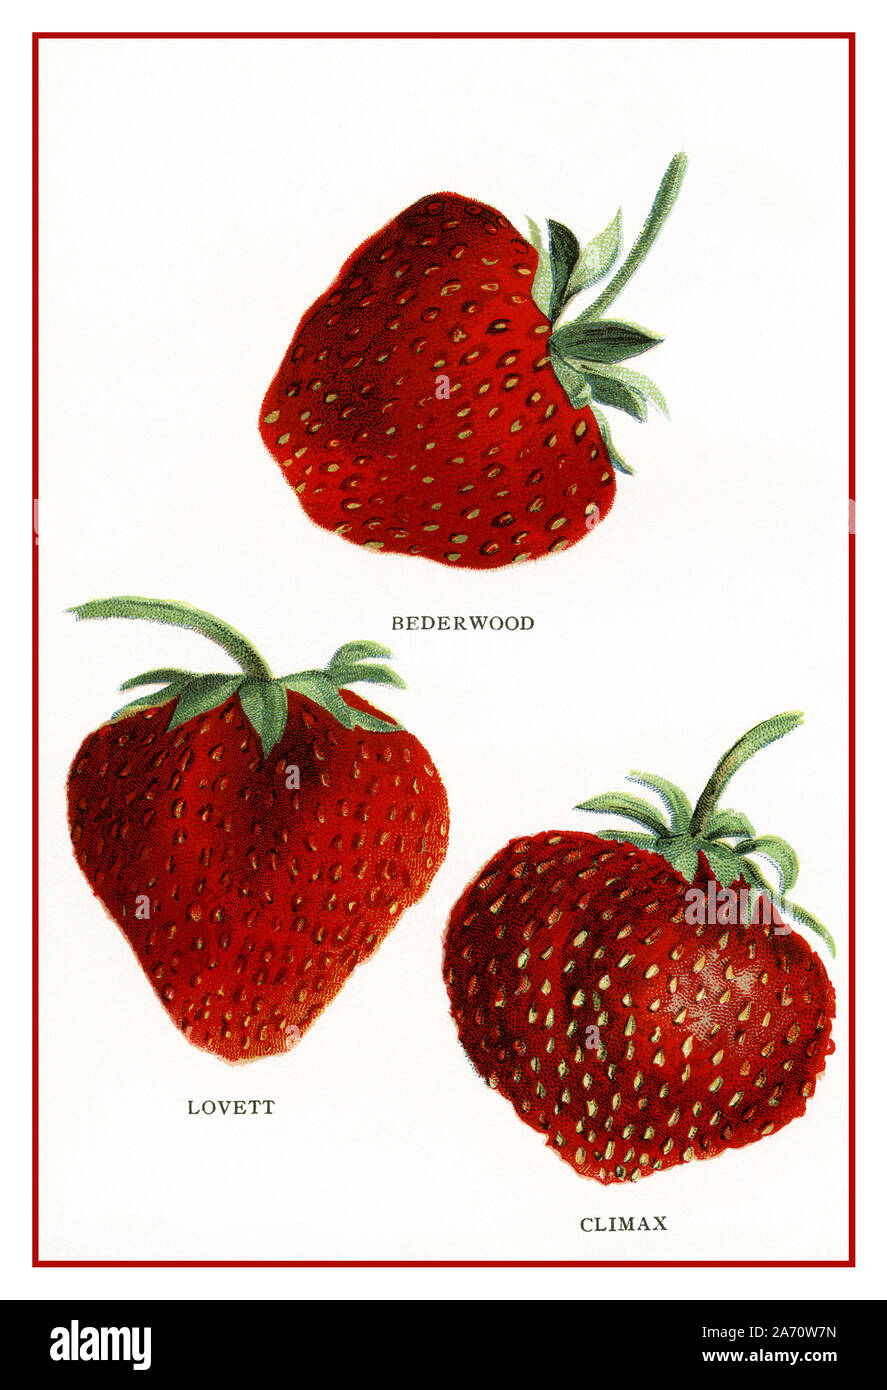 1900 Vintage Americana histórica fresas frutas ilustración de tres variedades de fresas, BEDERWOOD, Lovett, Climax, desde el Biggle Berry libro de Jacob Biggle, Estados Unidos 1911. Ee.Uu. Foto de stock